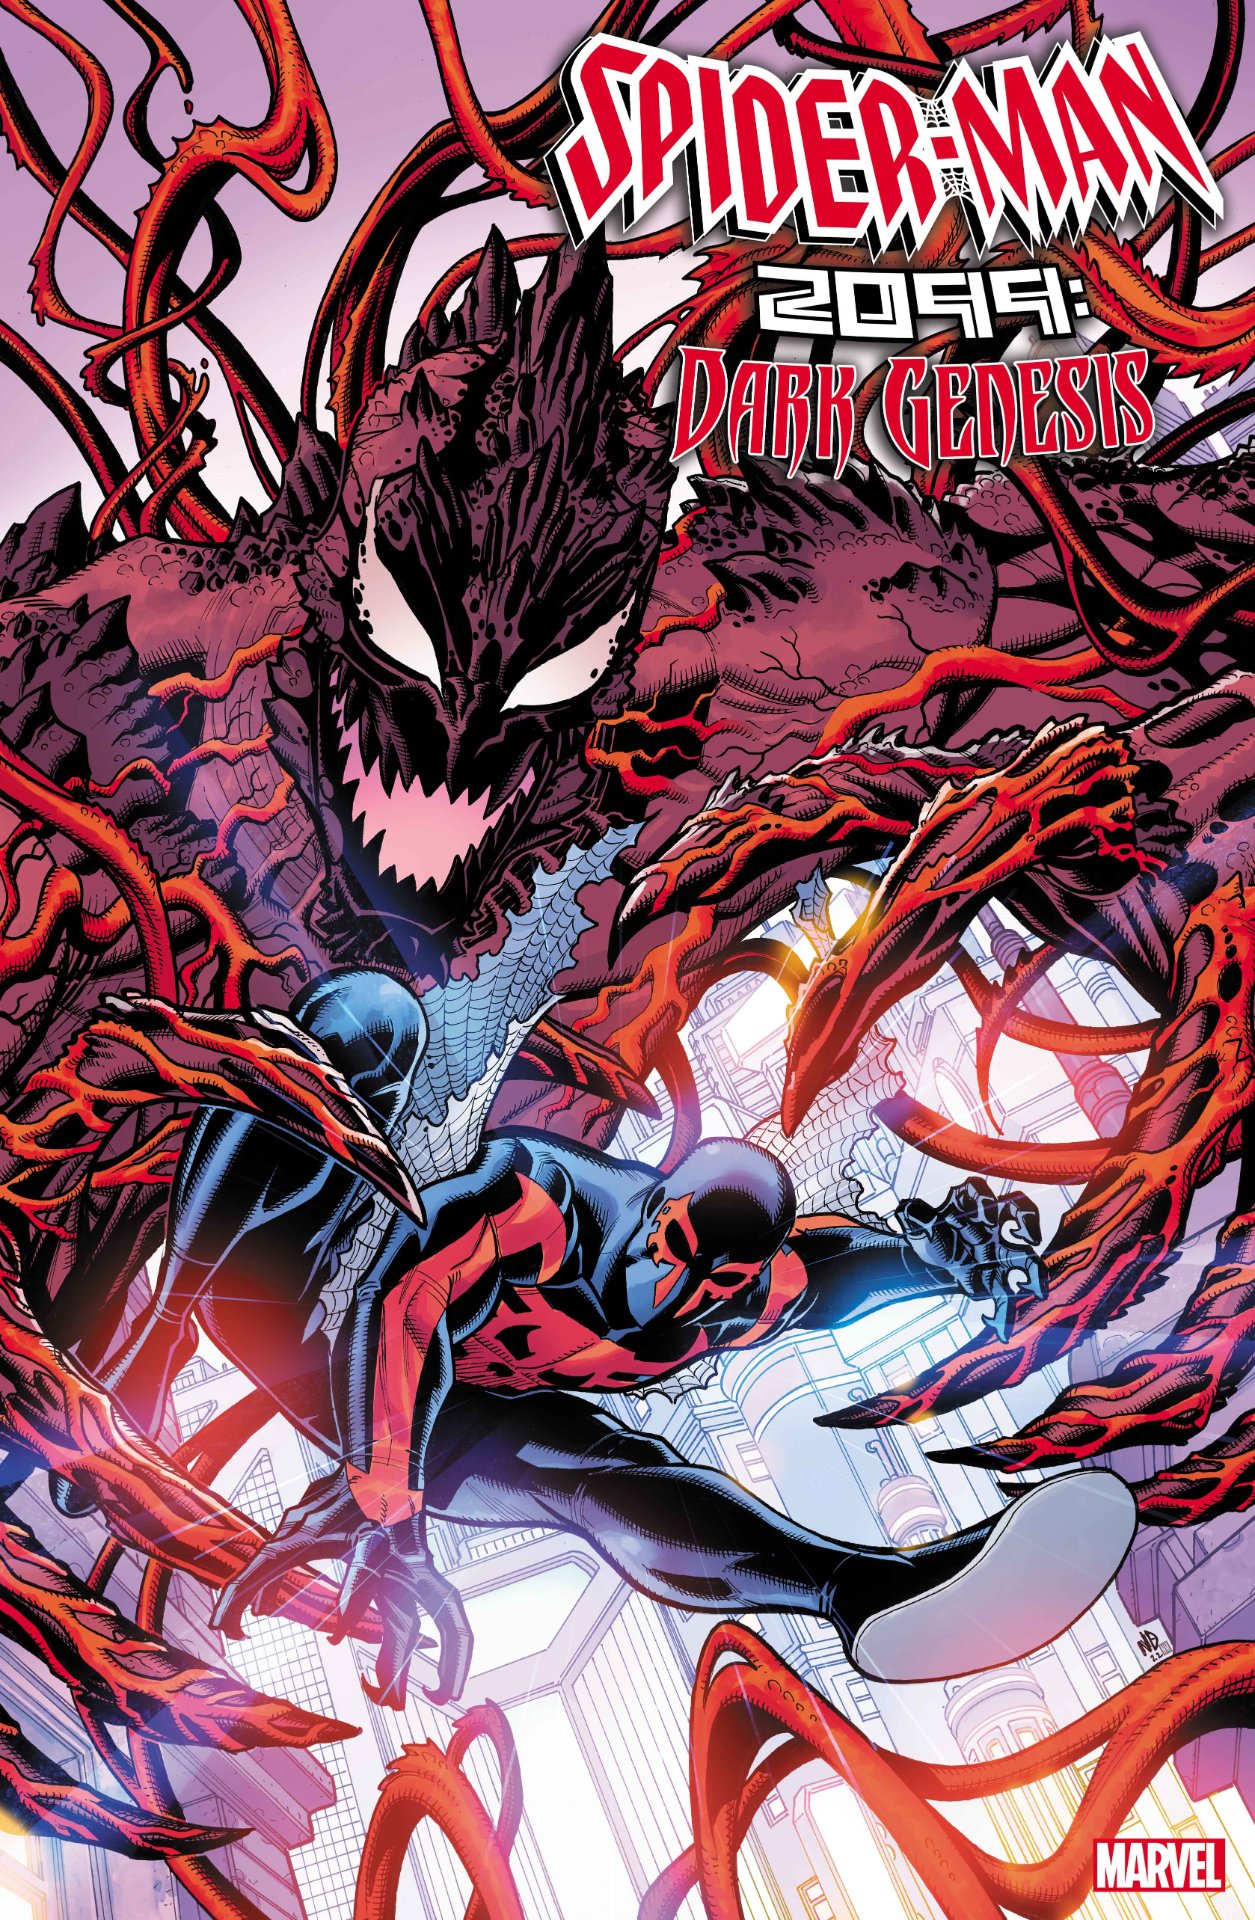 Spider-Man 2099: Darkish Genesis #1 duvet